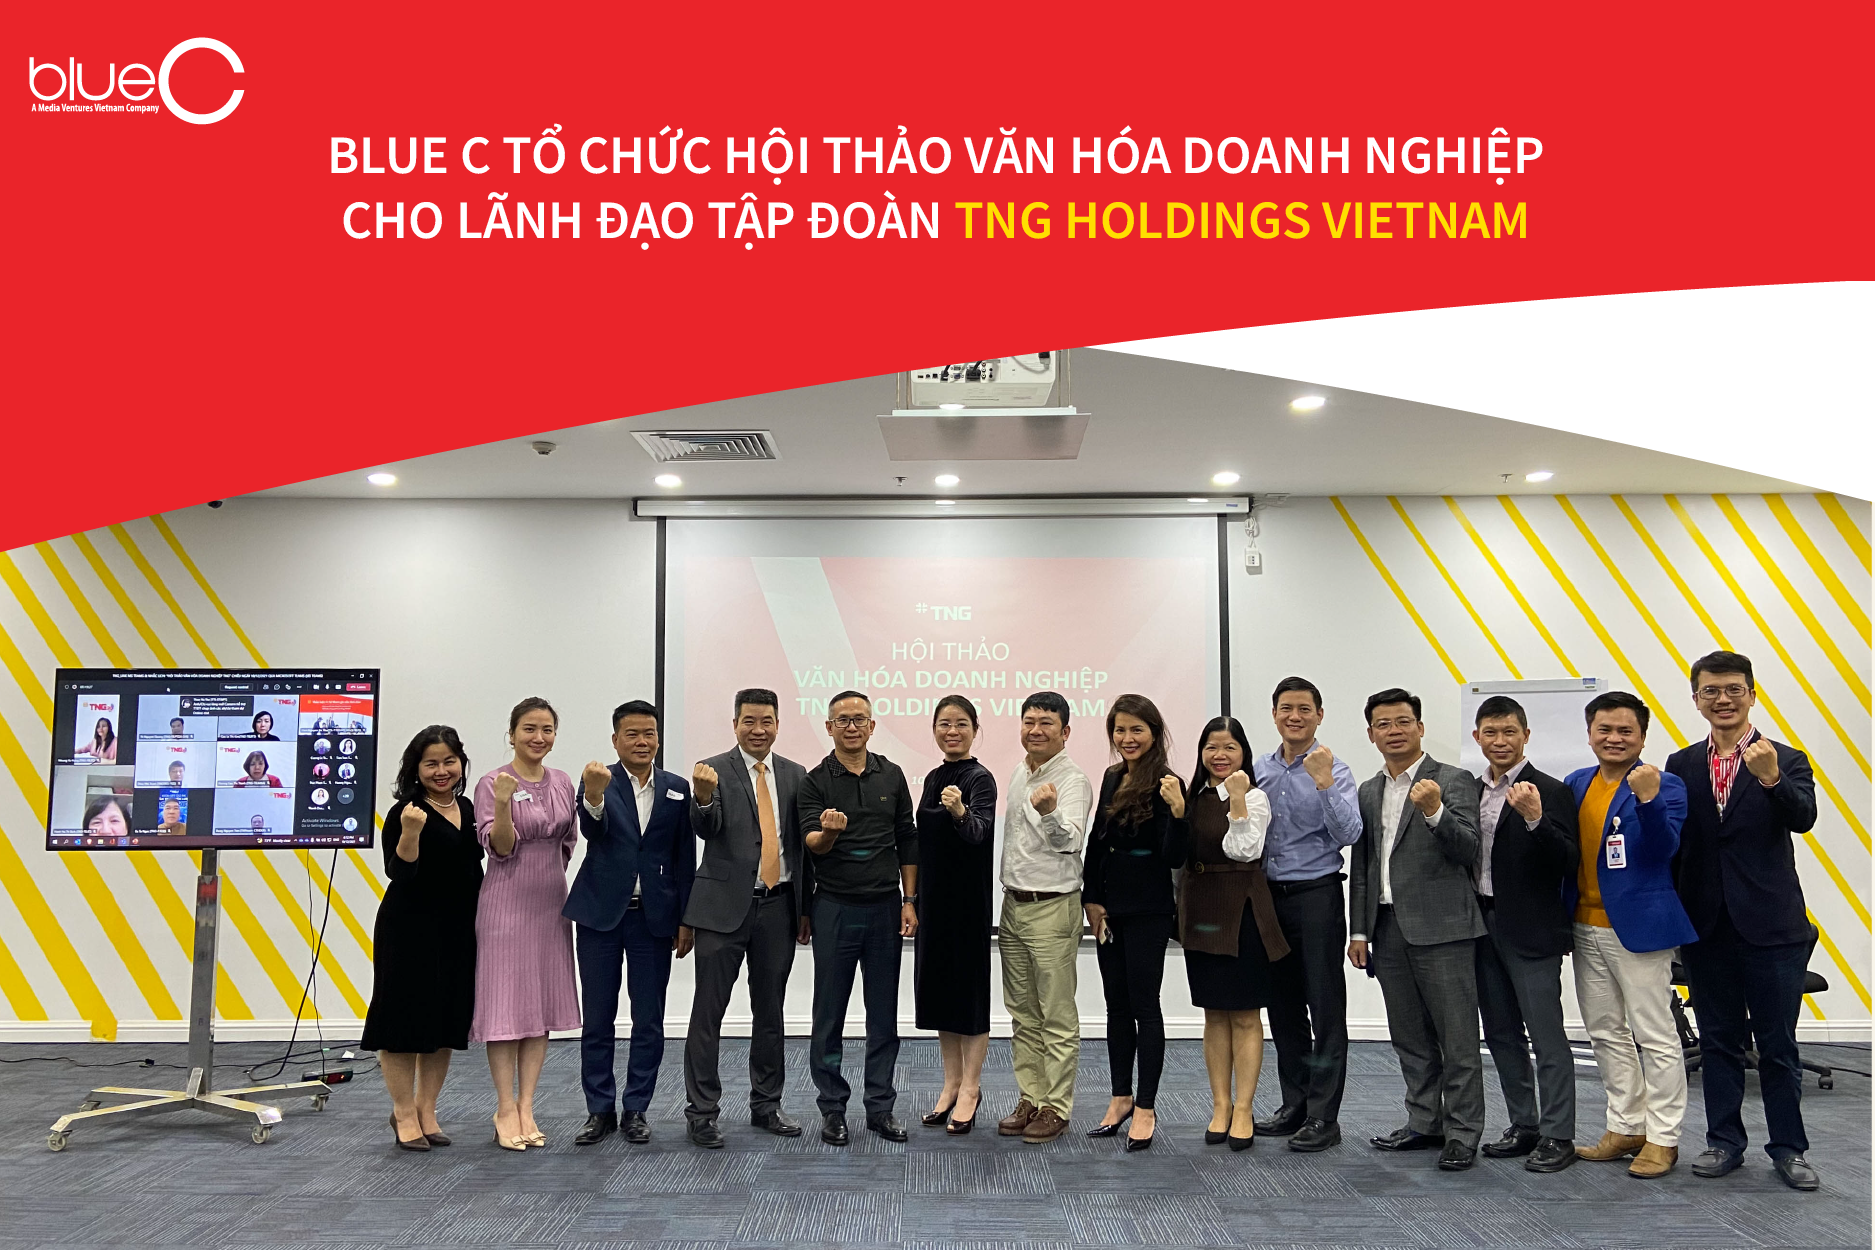 Blue C tổ chức hội thảo văn hóa doanh nghiệp cho lãnh đạo tập đoàn TNG Holdings Vietnam